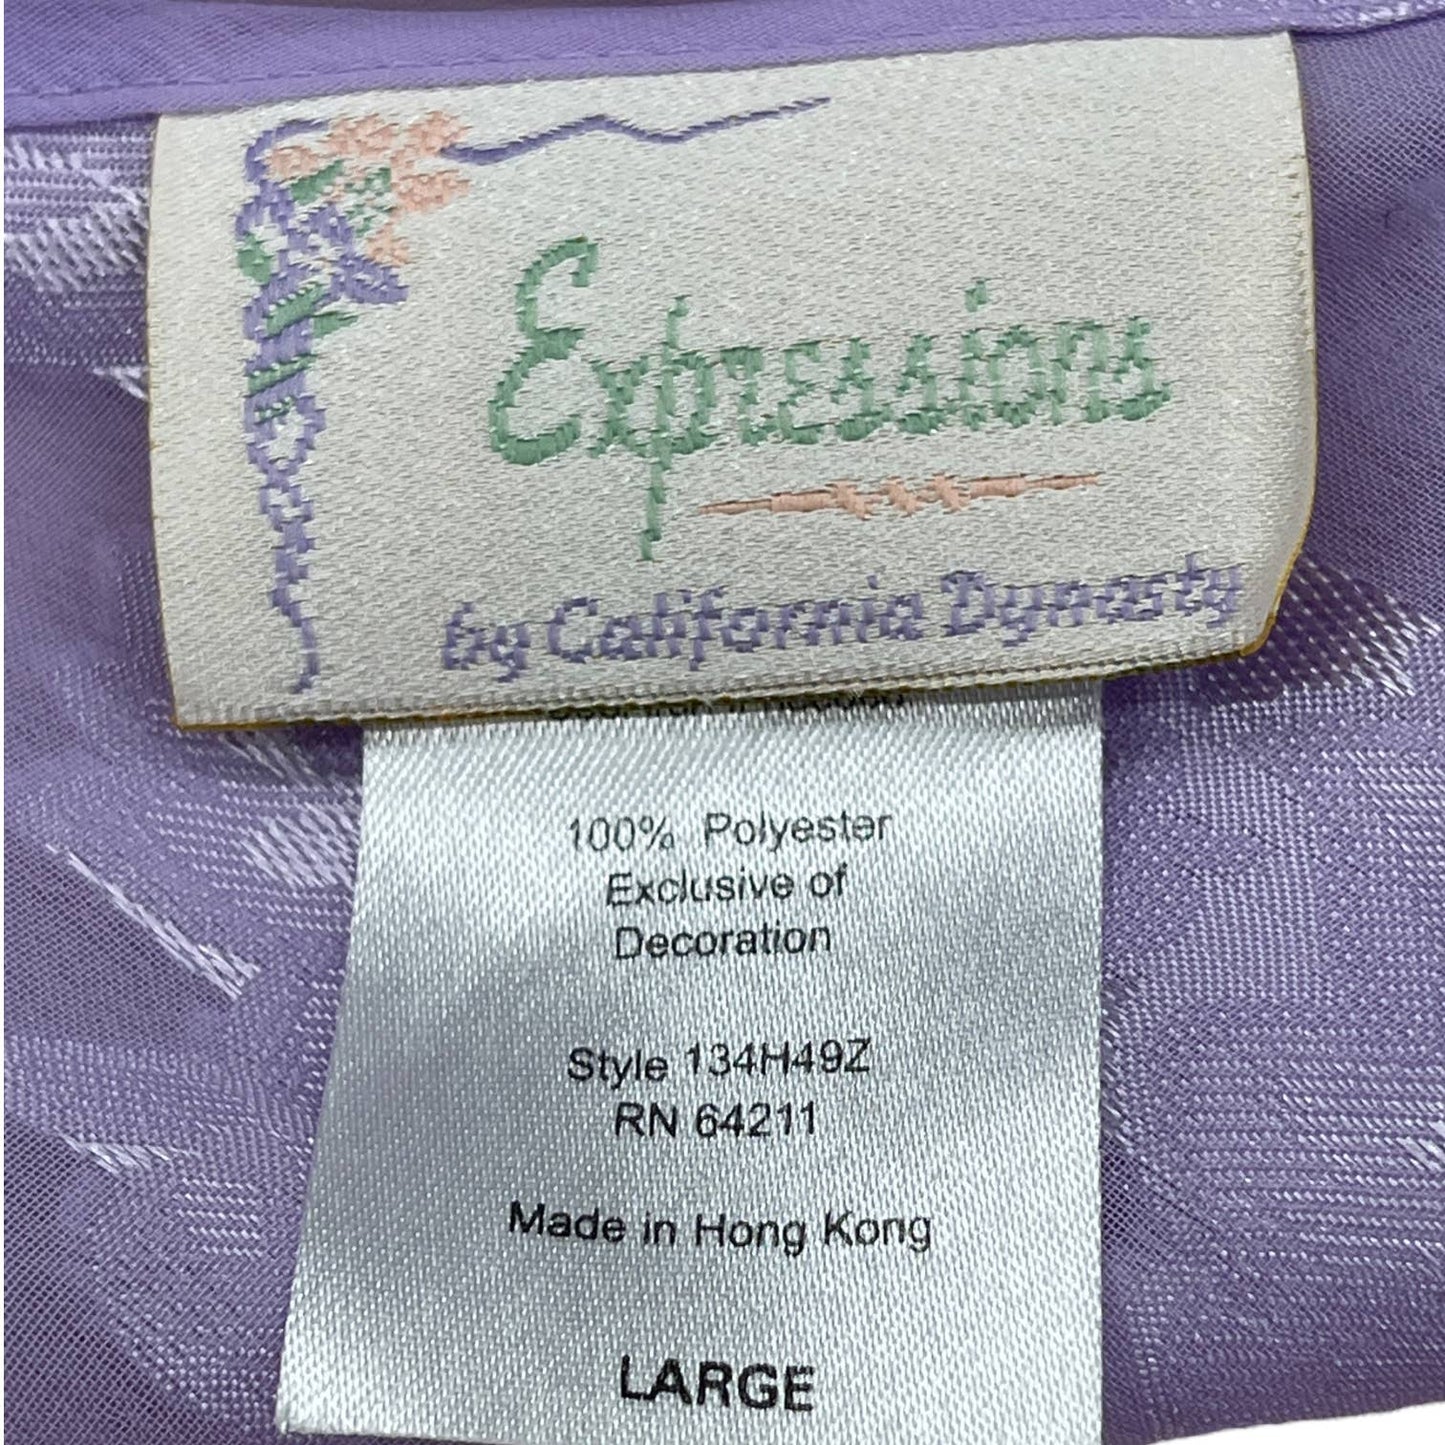 Vintage 90s Lavender Purple Burnout Nightgown Mini Floral Expressions Size L